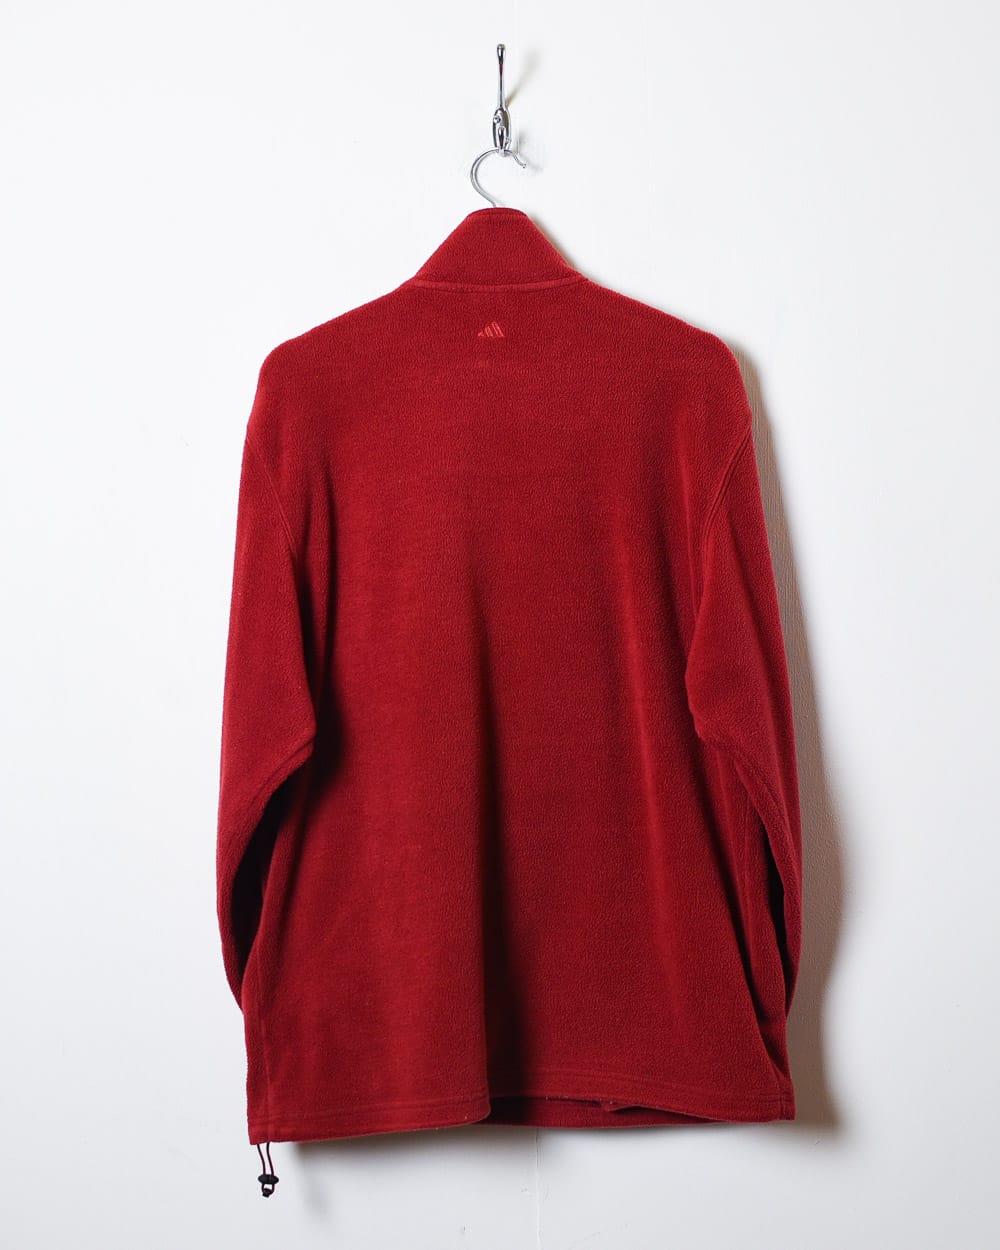 Red Adidas 1/4 Zip Fleece - Medium